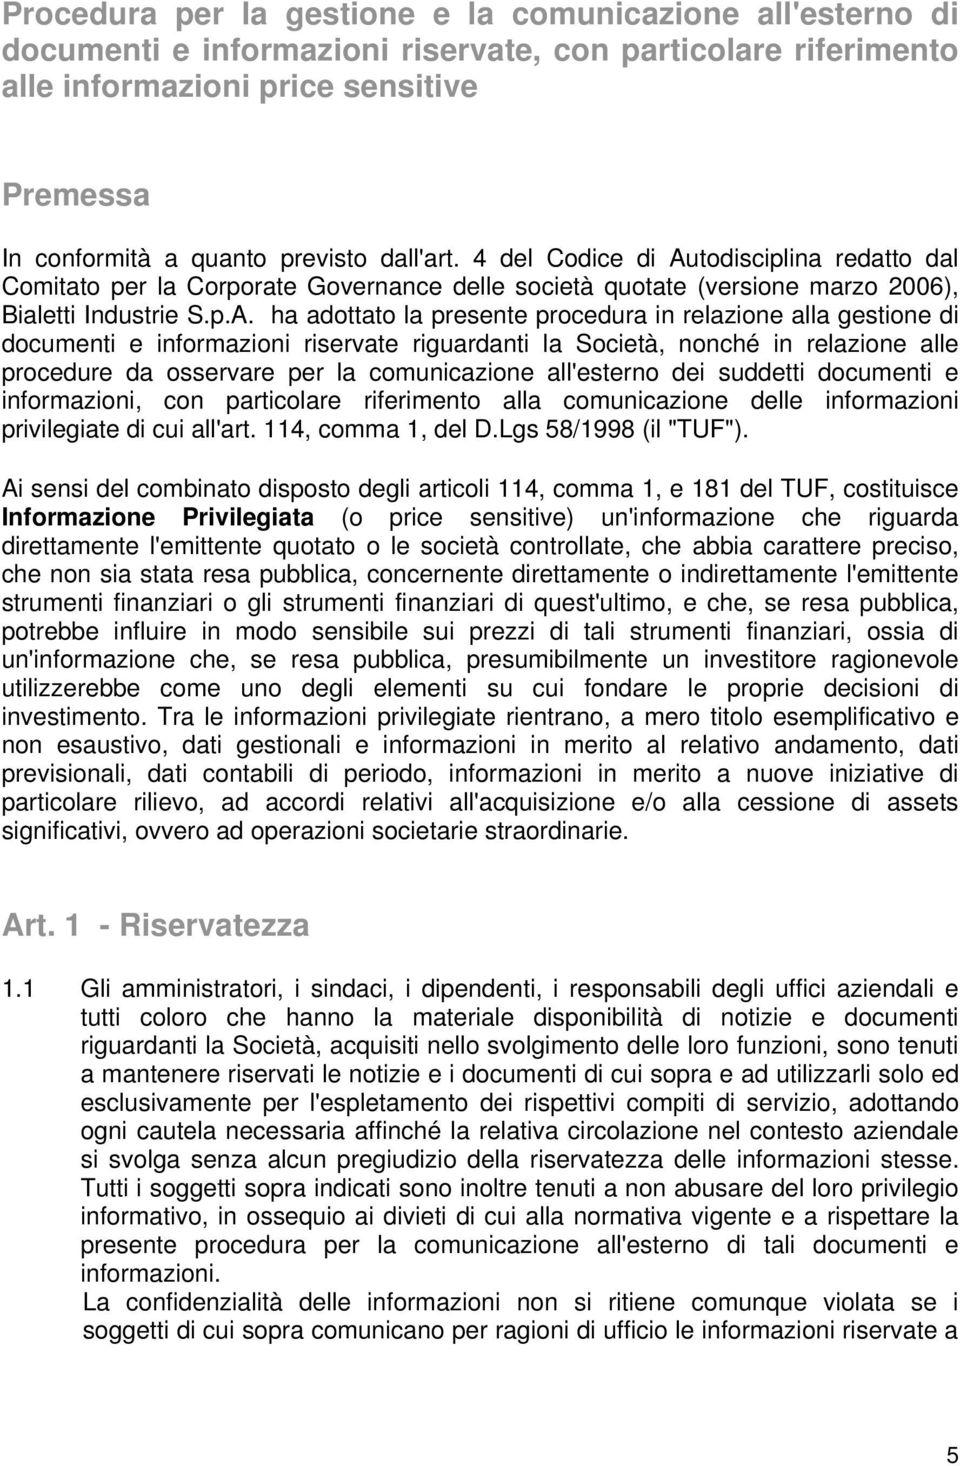 todisciplina redatto dal Comitato per la Corporate Governance delle società quotate (versione marzo 2006), Bialetti Industrie S.p.A.